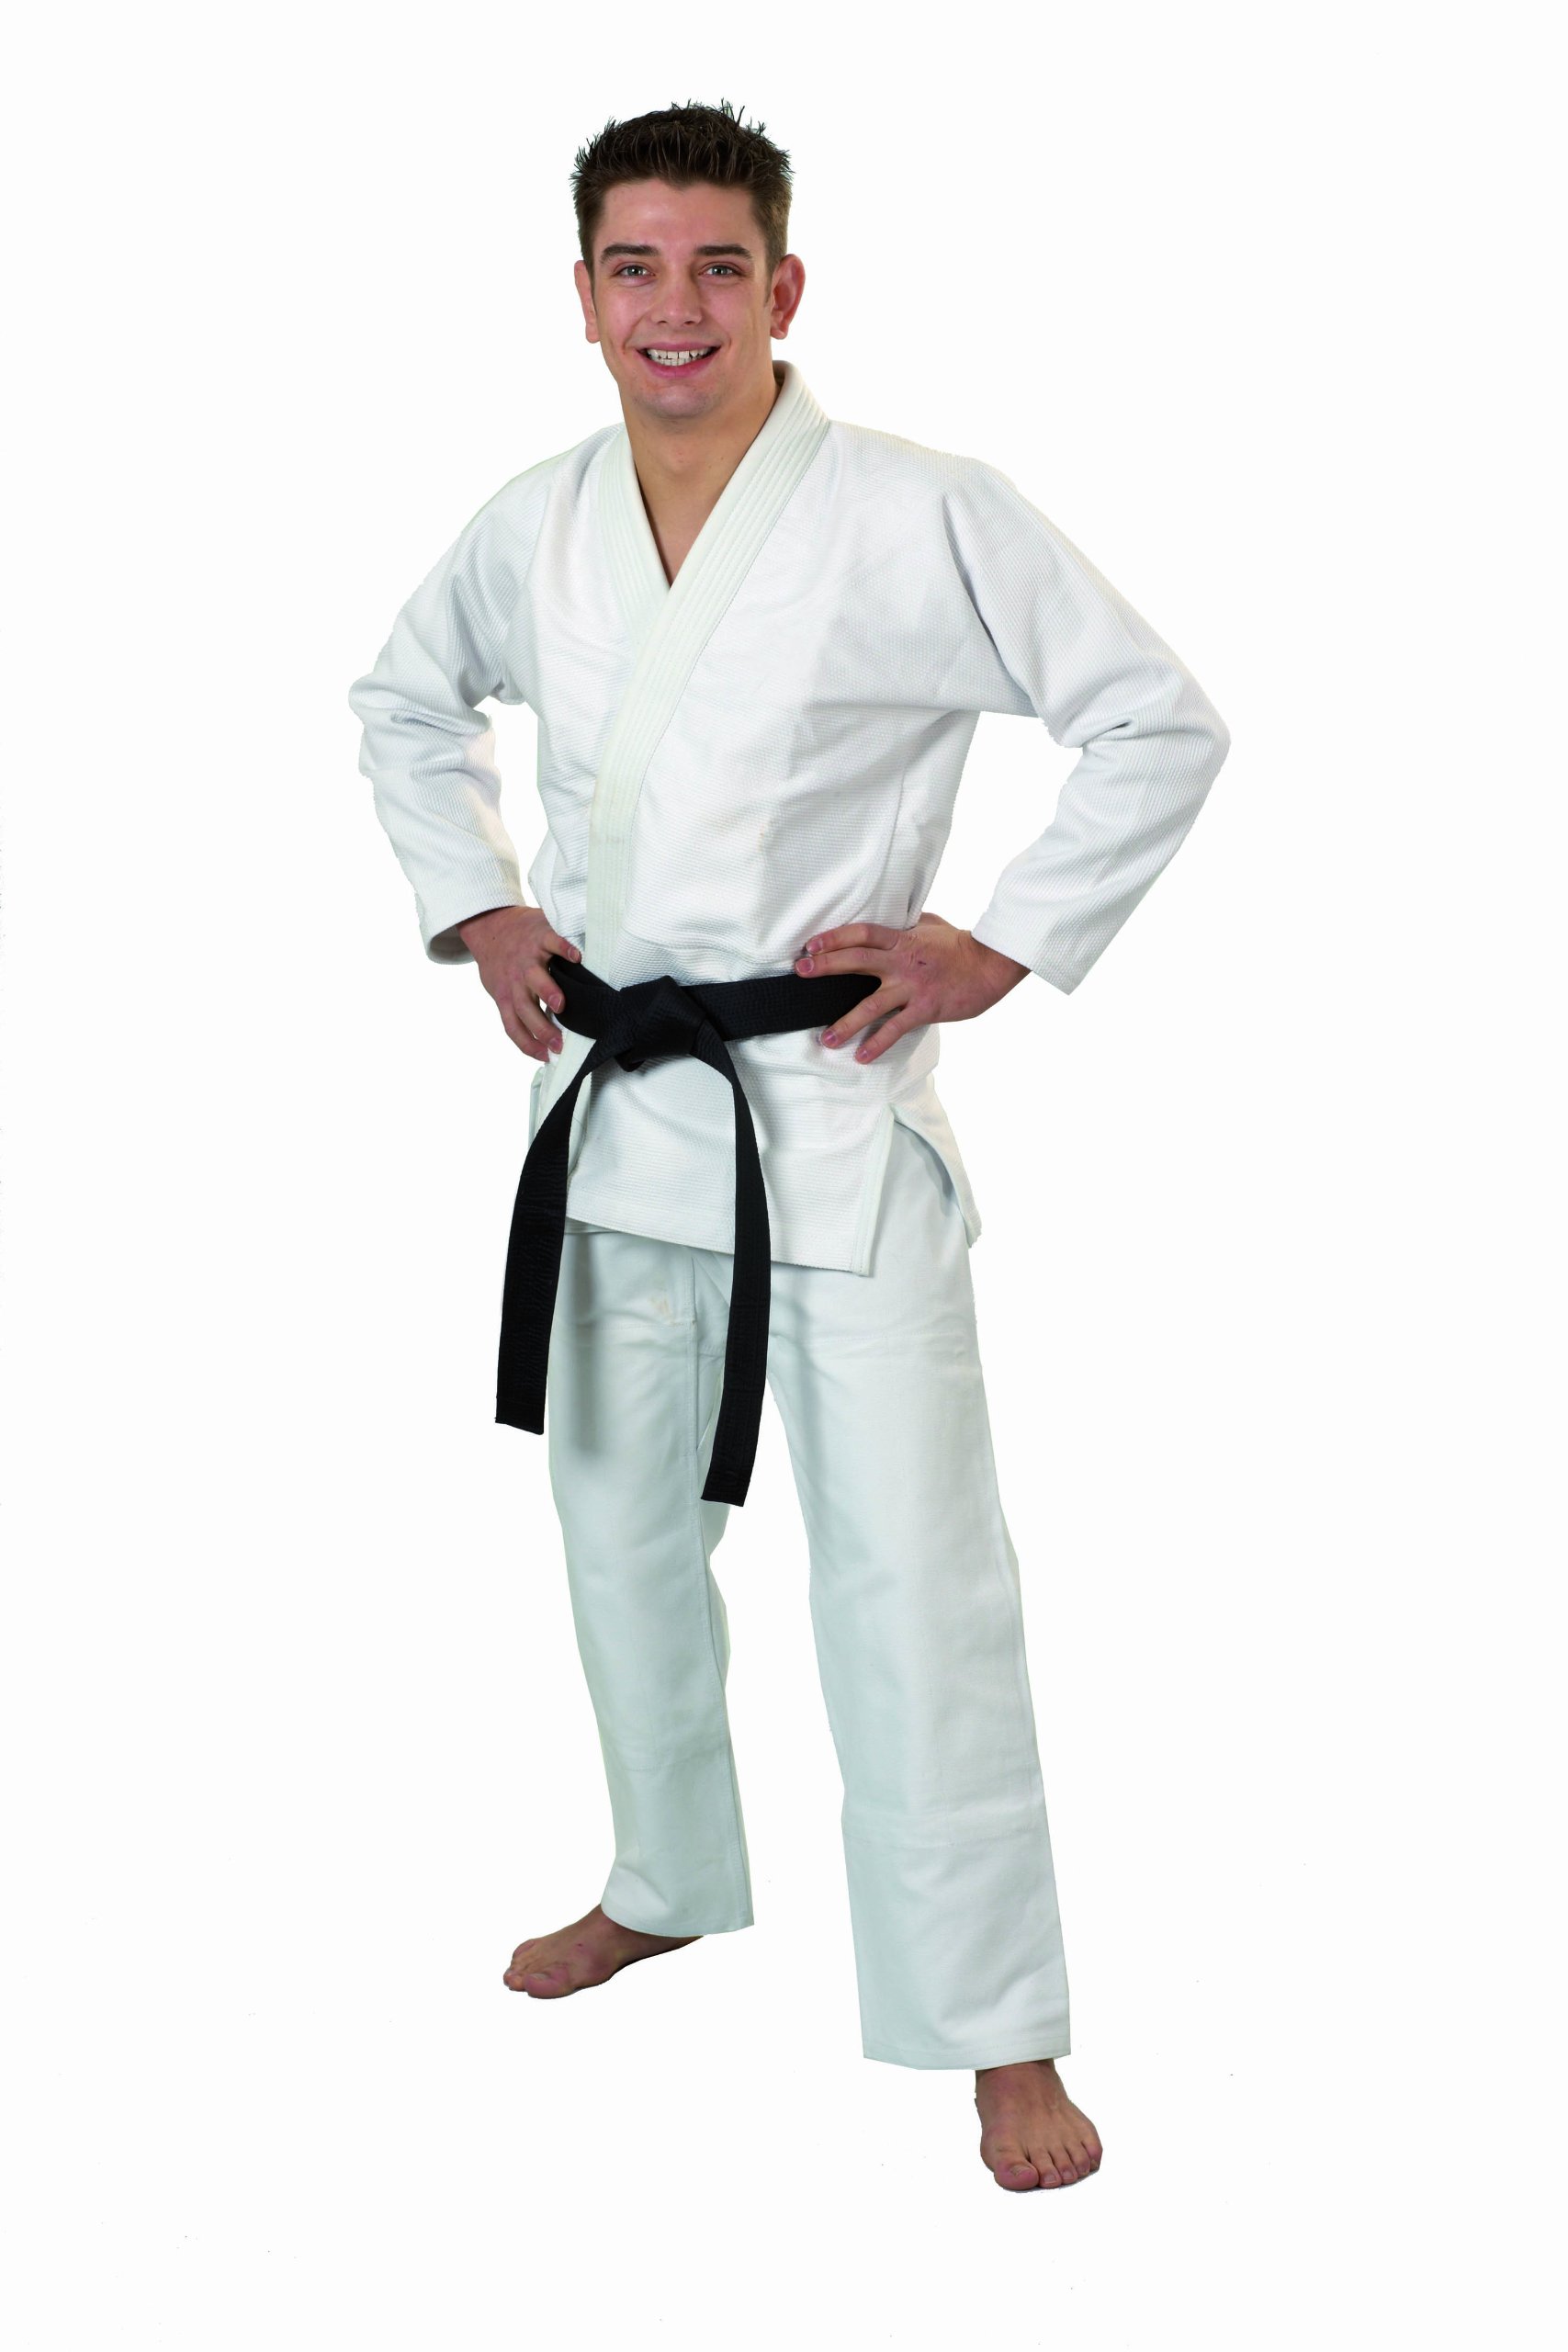 Ju-Sports Ju-Jutsu Anzug Pearl Pure Weiß A5 I Edler Jujutsu Anzug für Erwachsene I Klassisch schmaler BJJ Gi Herren I Doppelt verstärkter Brust- & Schulterbereich I 100% Baumwolle